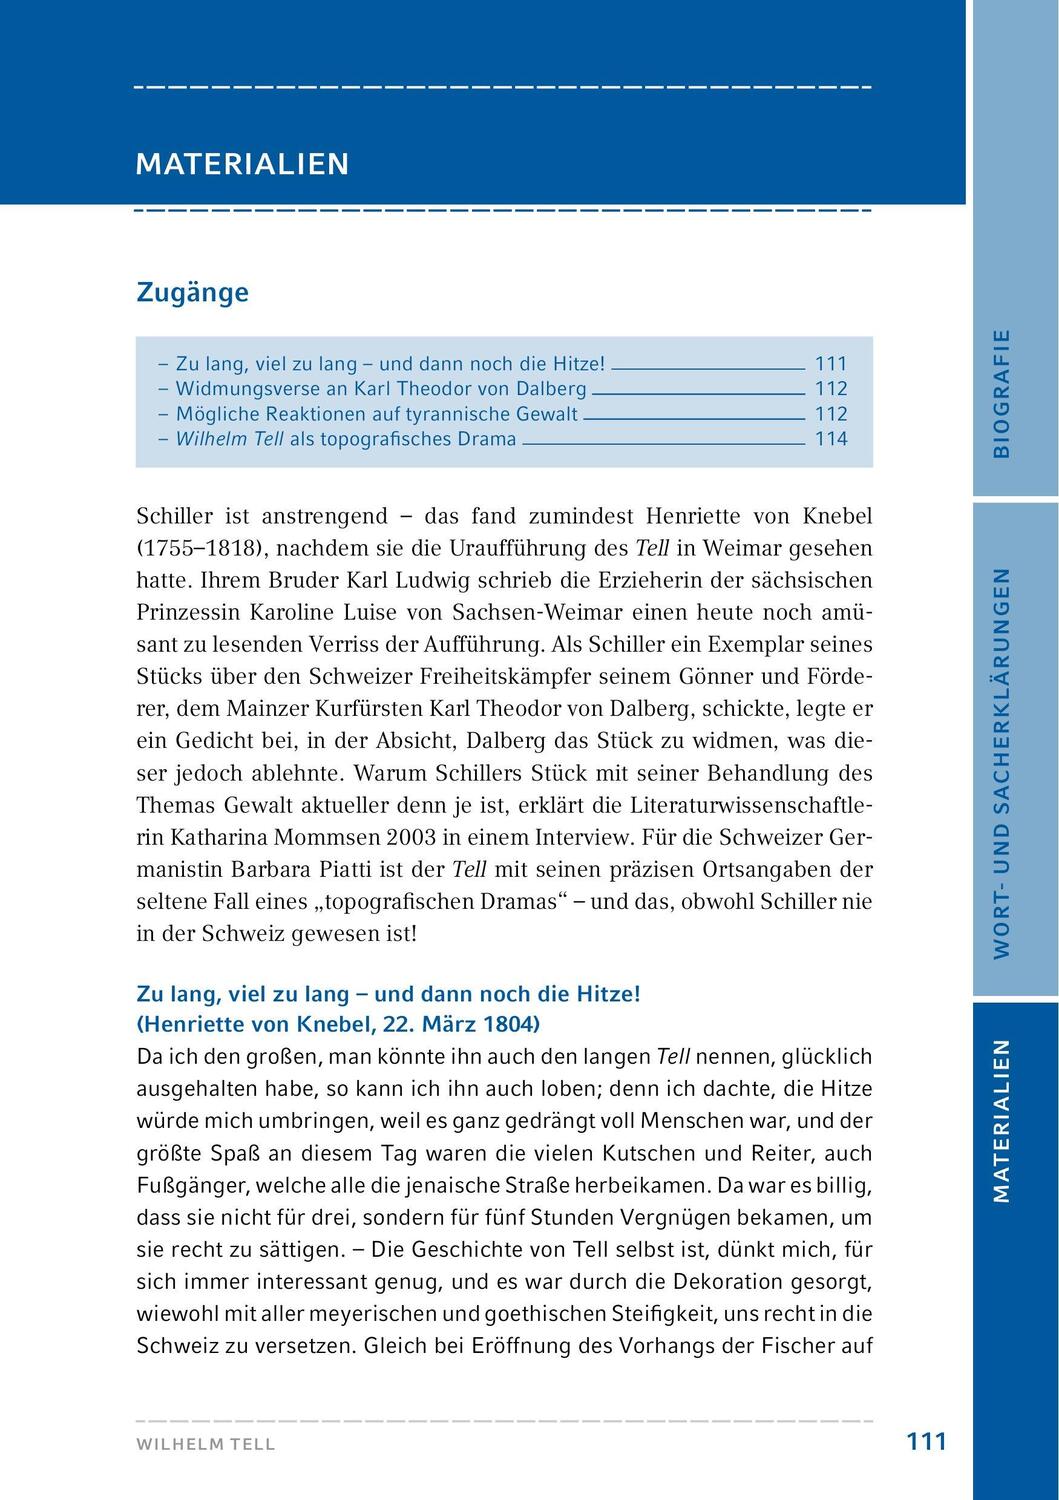 Bild: 9783804425866 | Wilhelm Tell. Hamburger Leseheft plus Königs Materialien | Schiller